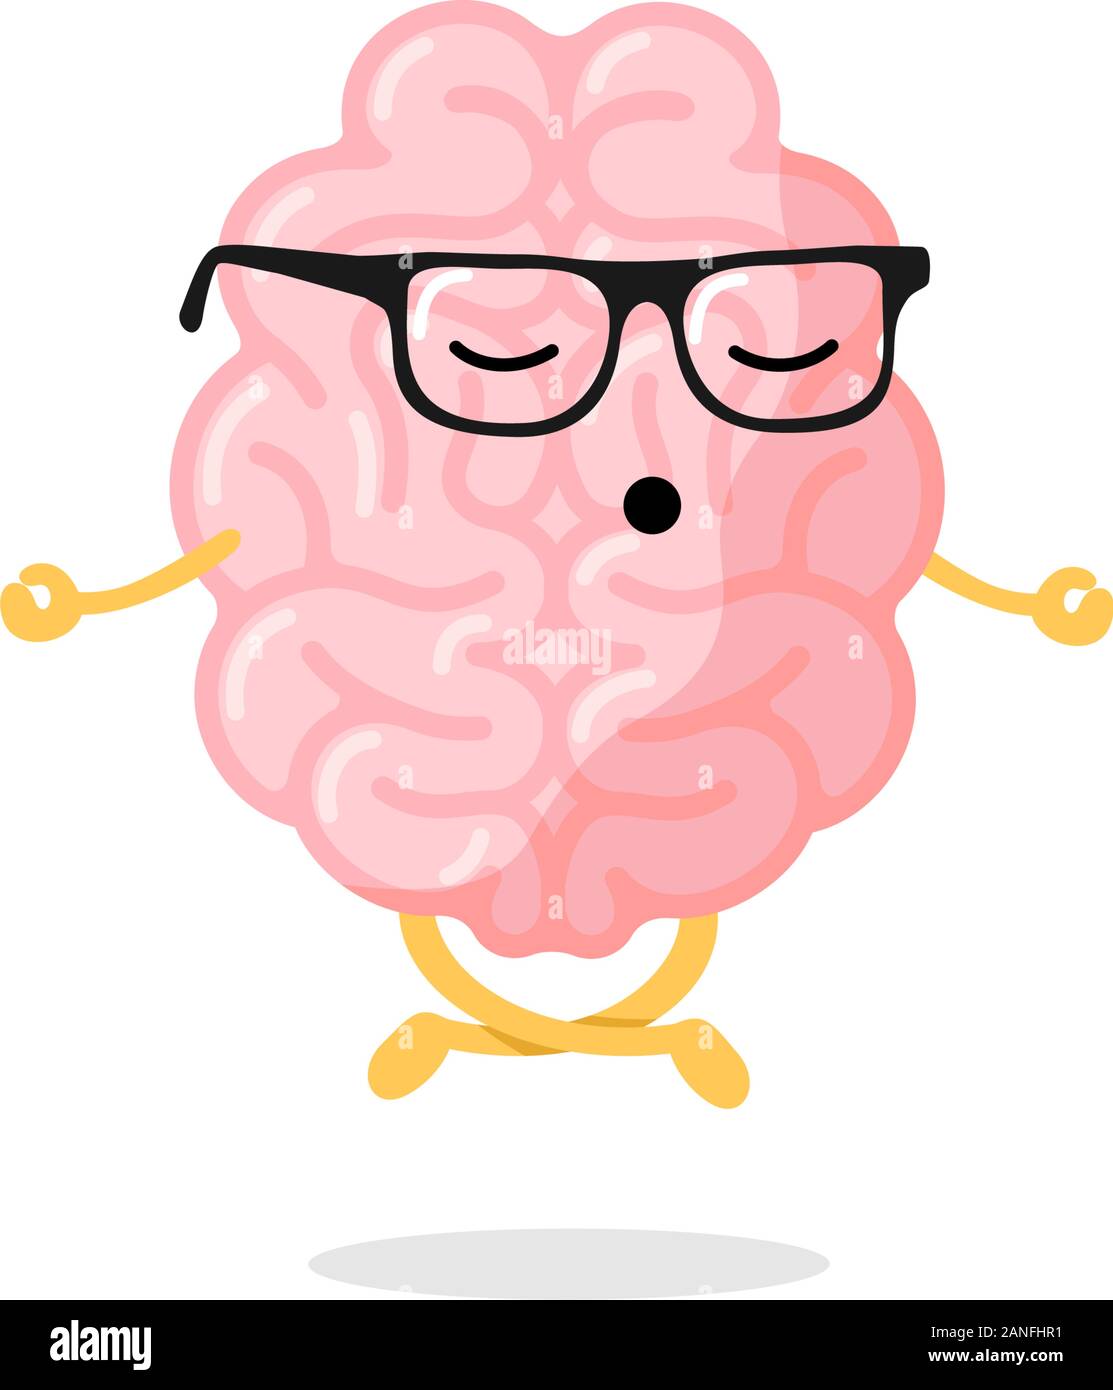 Cute Cartoon smart menschlichen Gehirn Charakter mit Brille Entspannung meditieren Konzept. Organmeditation des Zentralnervensystems in Lotusyoga-Pose. Lustige Entspannung Konzept Vektor Illustration Stock Vektor